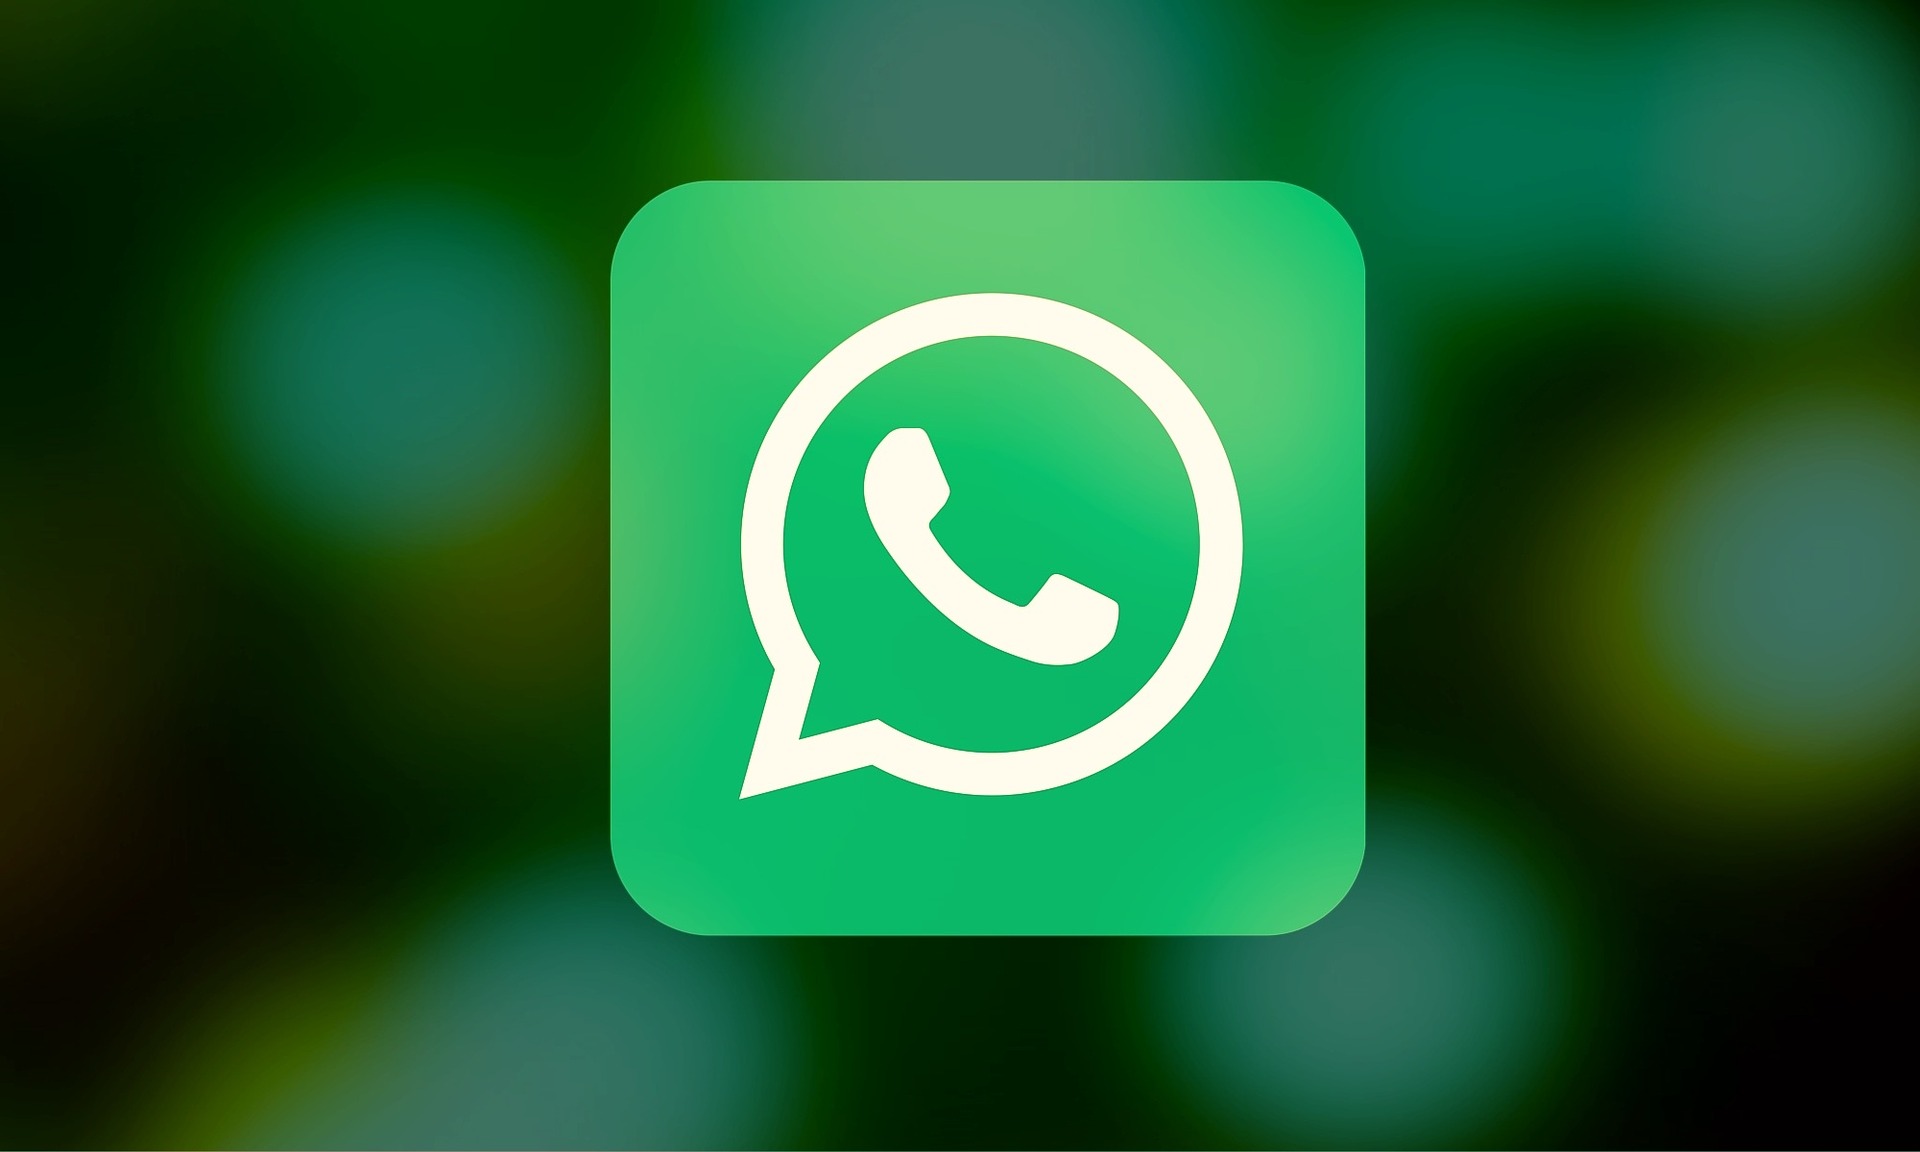  Le créateur de WhatsApp affirme avoir été naïf et vendu la vie privée de ses utilisateurs à Facebook